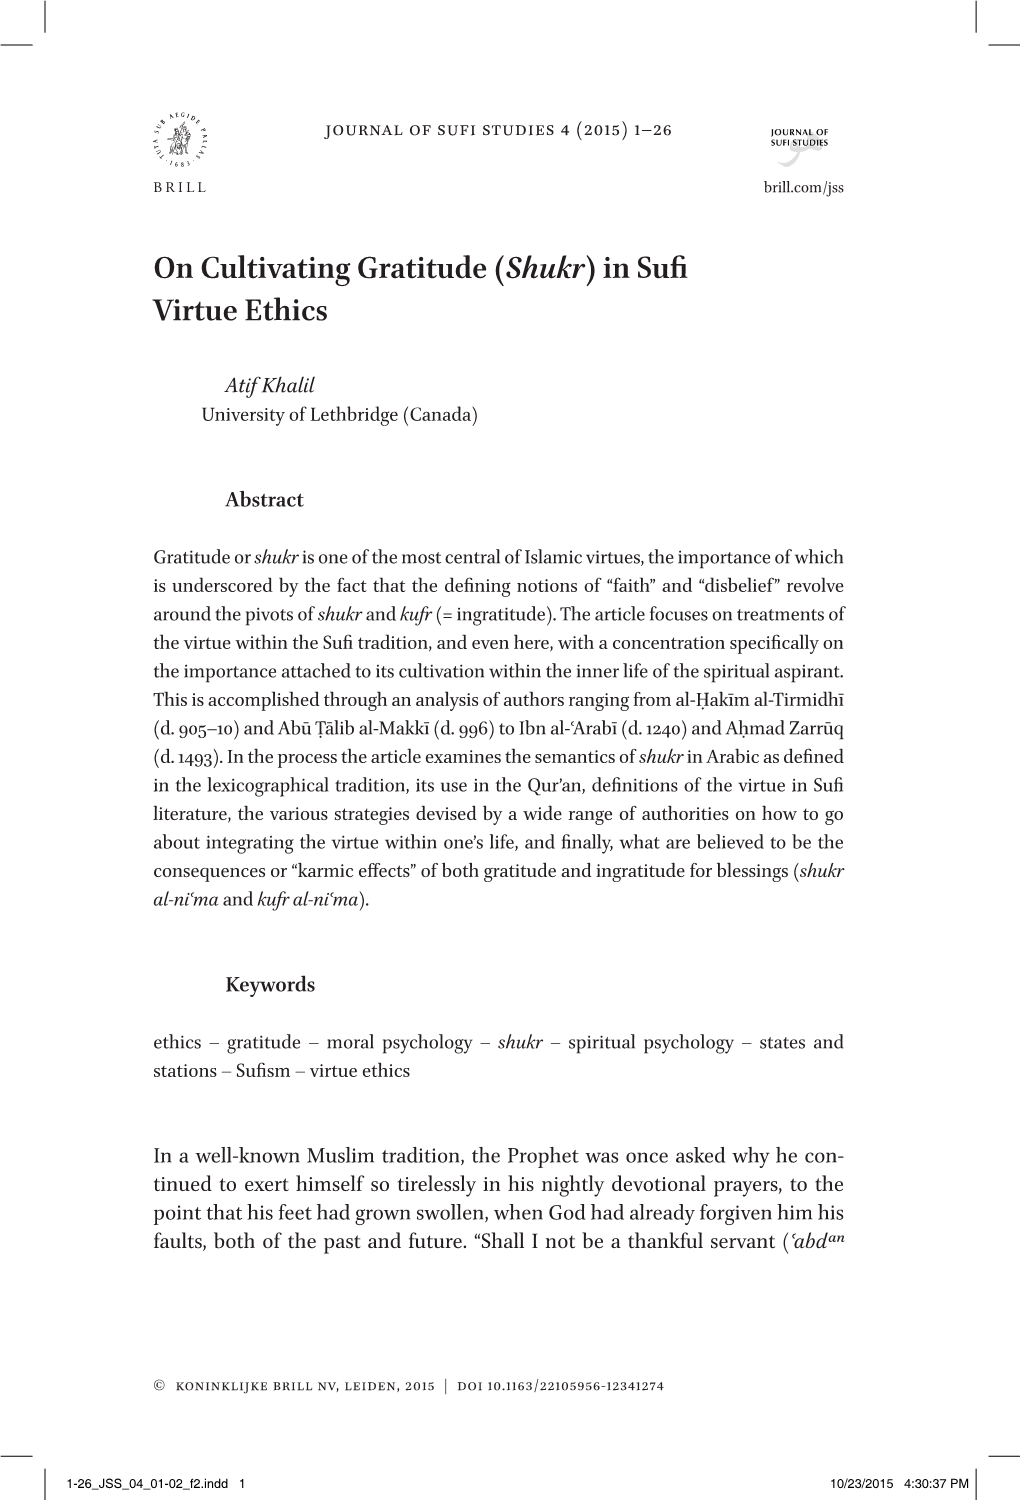 On Cultivating Gratitude (Shukr) in Sufi Virtue Ethics